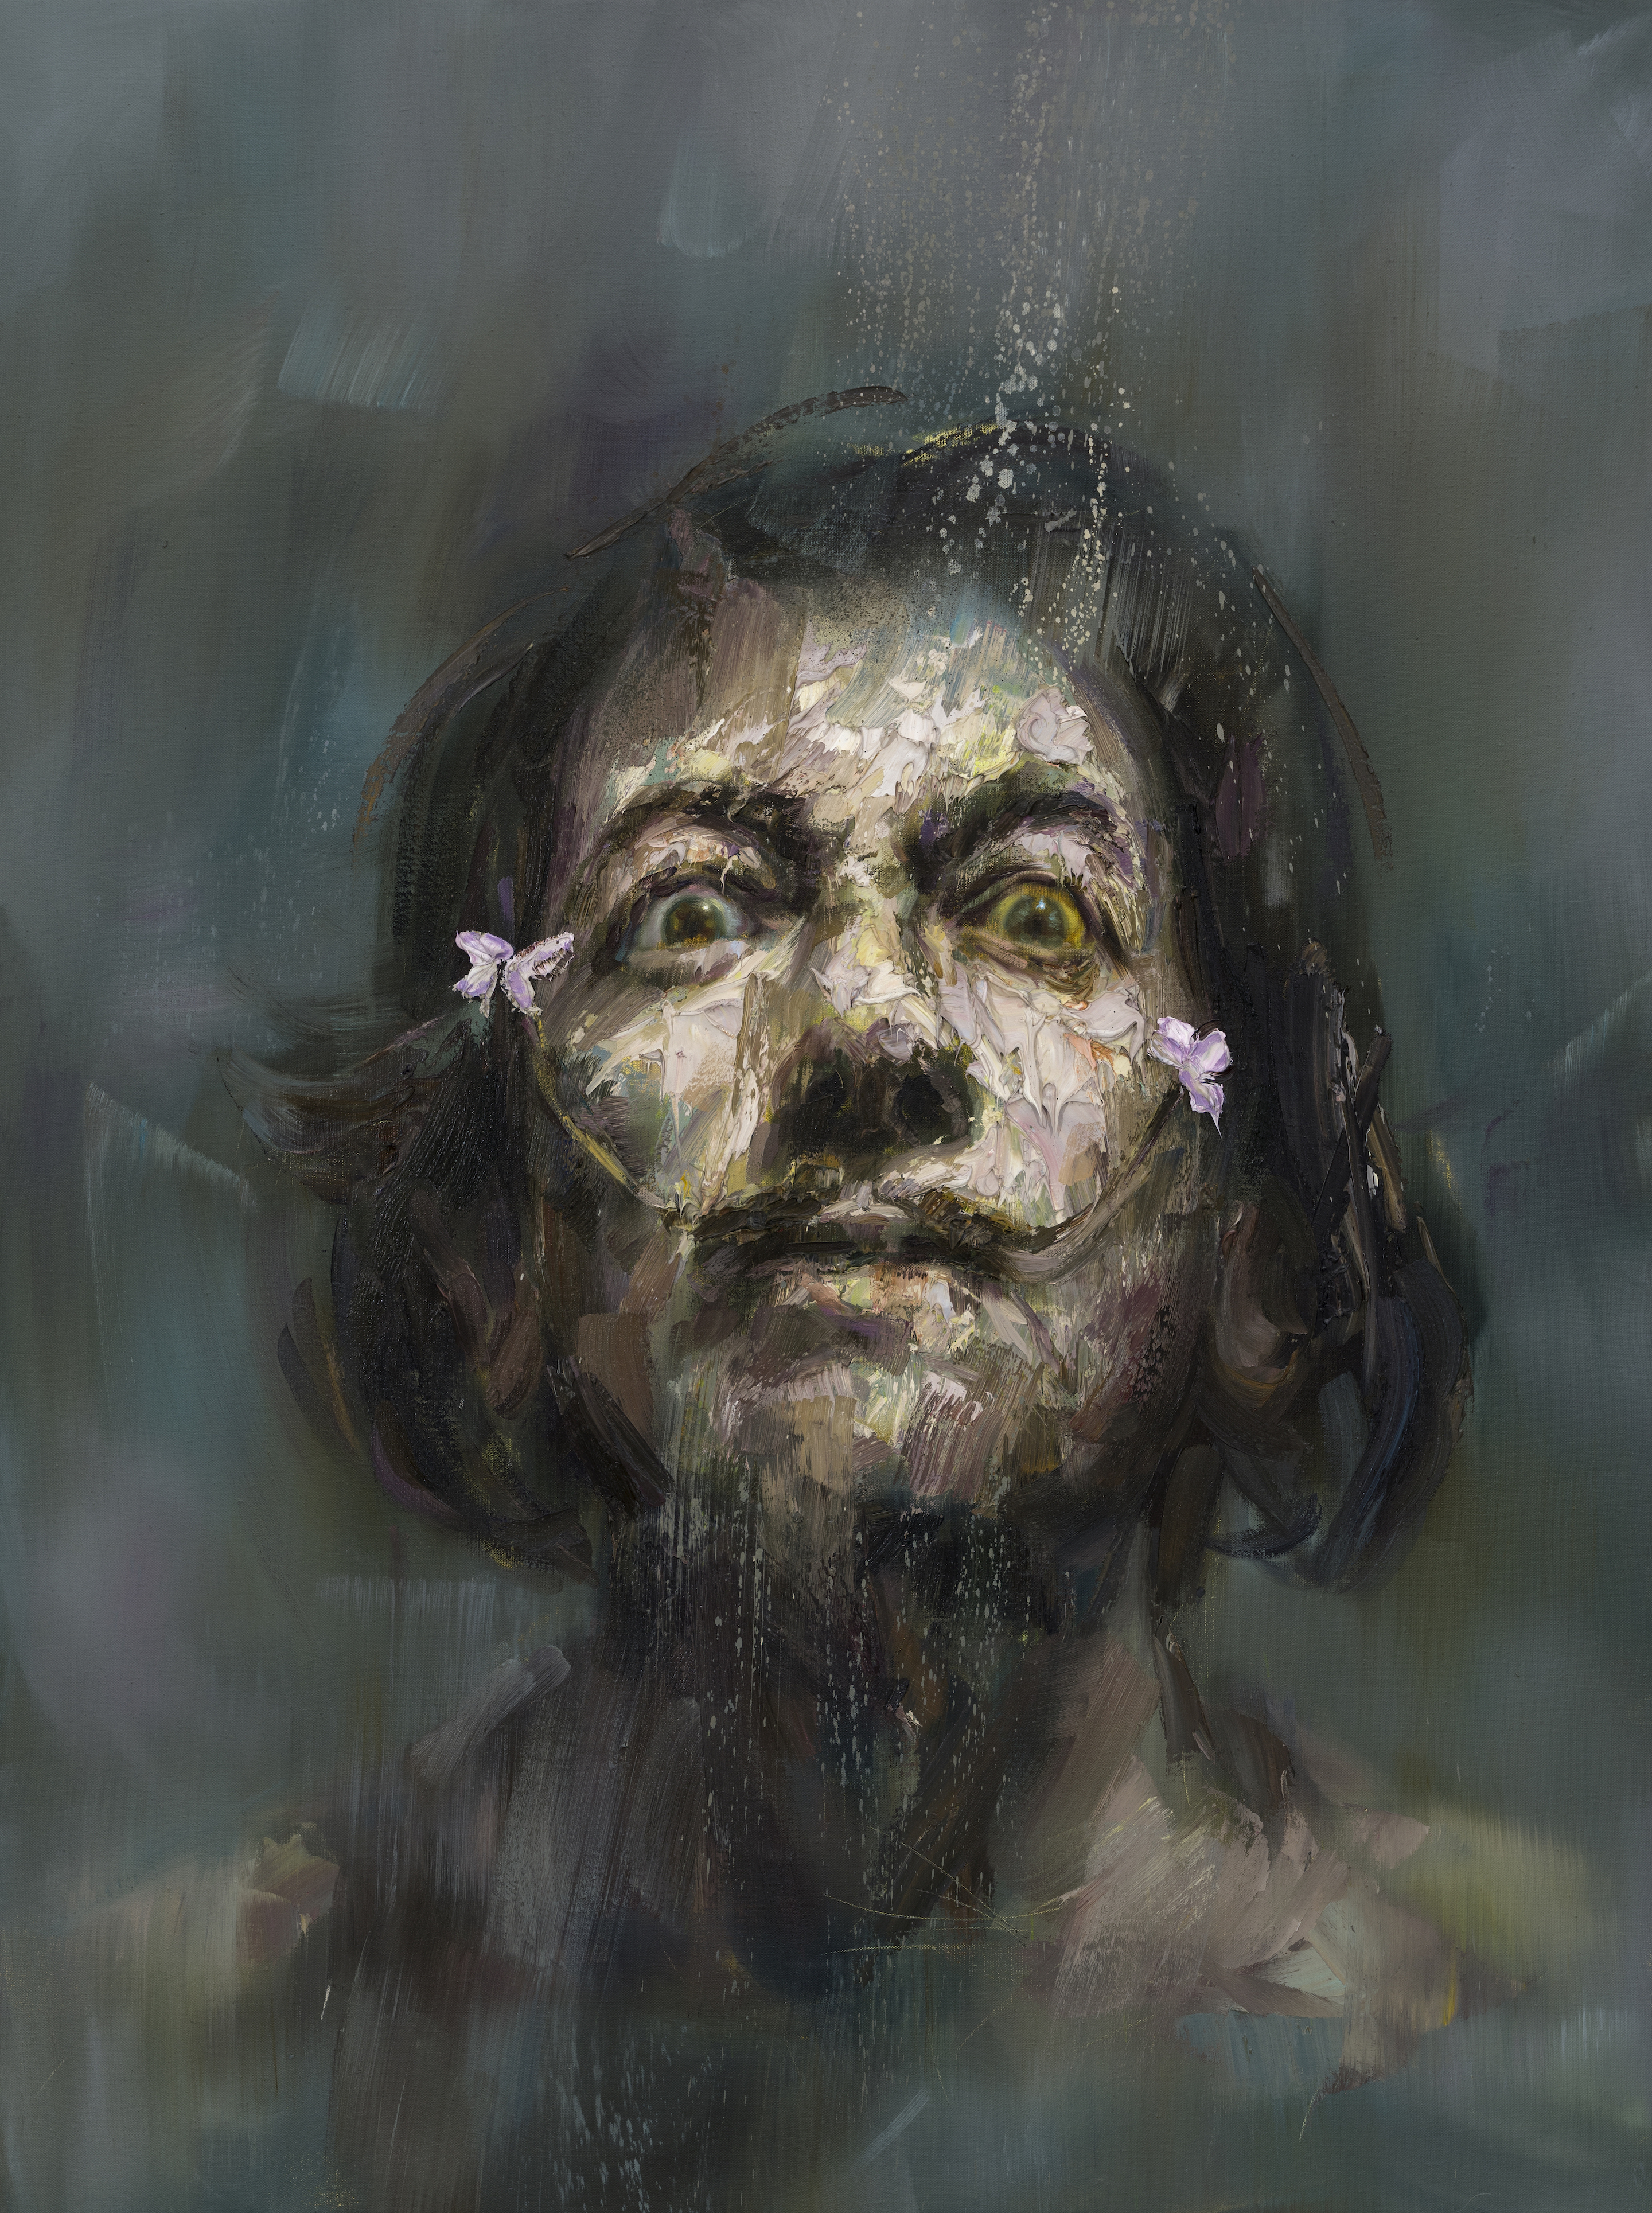 A portrait titled Salvador Dali by Artist Mathieu Laca